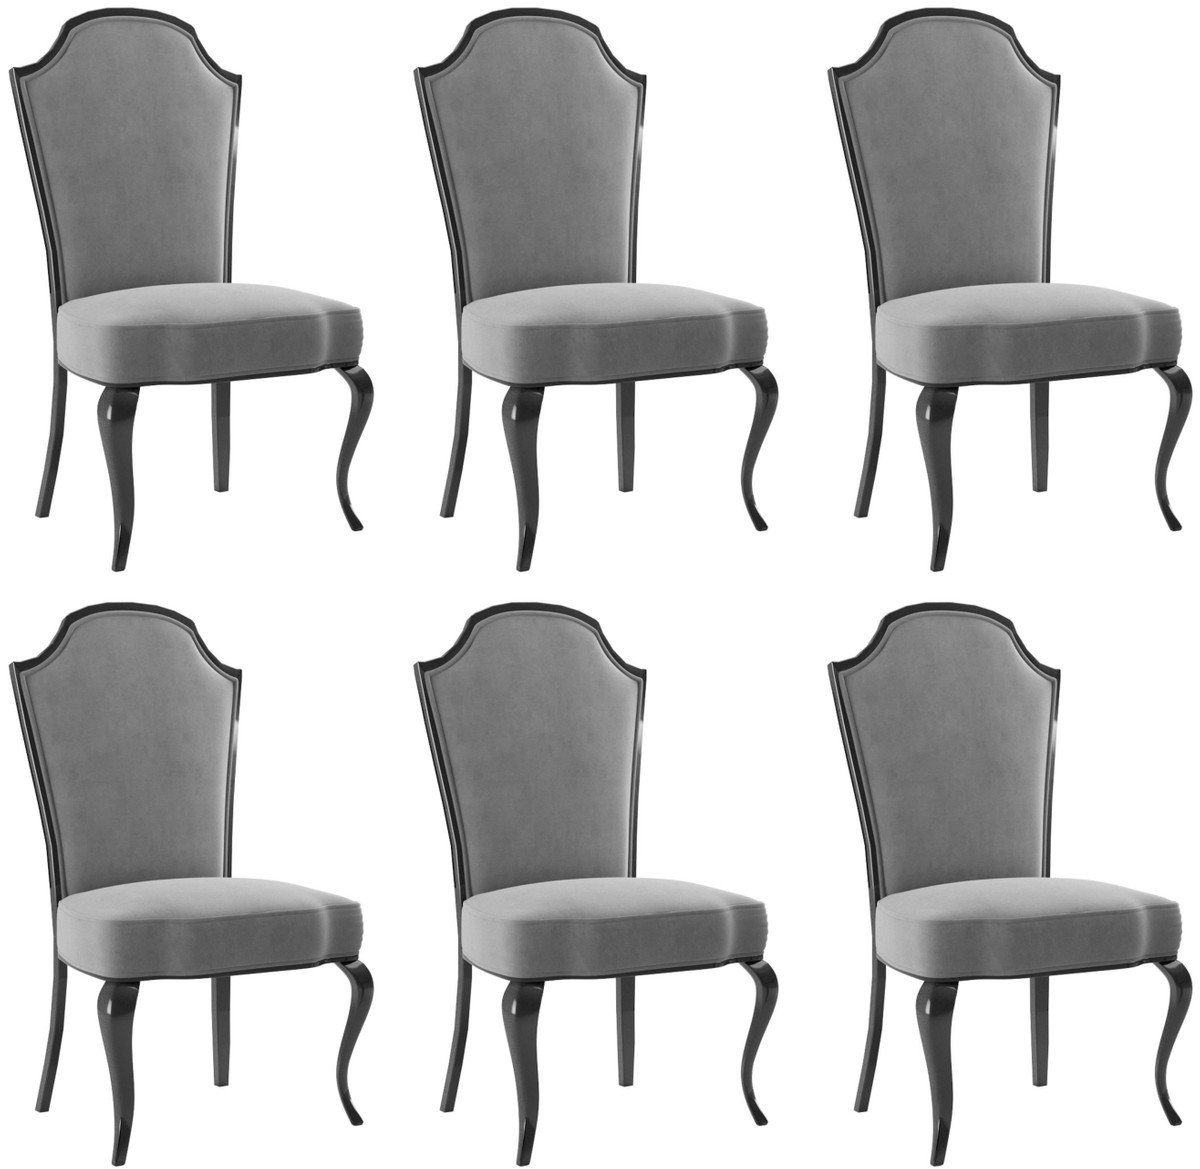 Casa Padrino Esszimmerstuhl Luxus Barock Esszimmer Stuhl Set Grau / Schwarz 55 x 53 x H. 113 cm - Barock Küchen Stühle 6er Set - Esszimmer Möbel im Barockstil